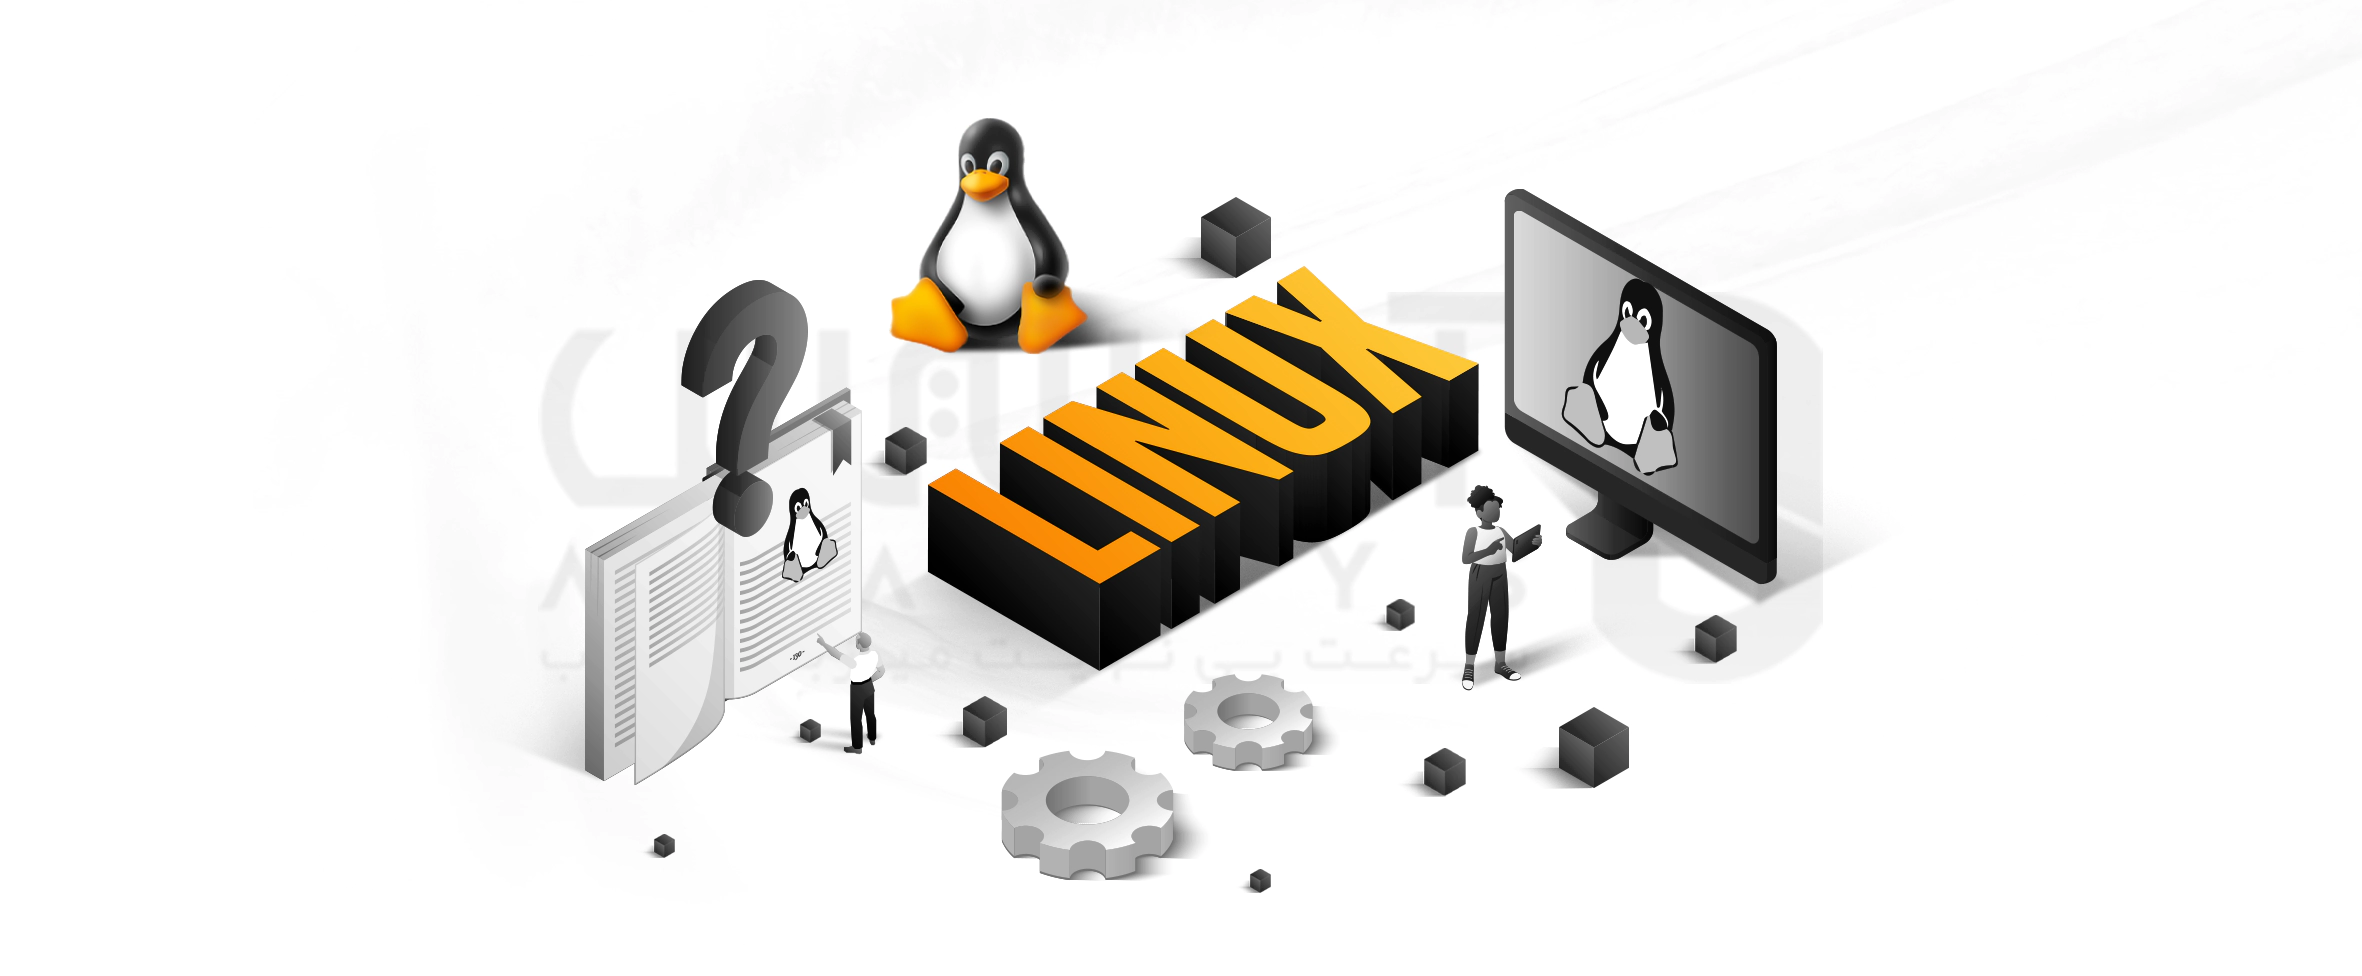 لینوکس چیست؟ همه چیز درباره سیستم عامل Linux